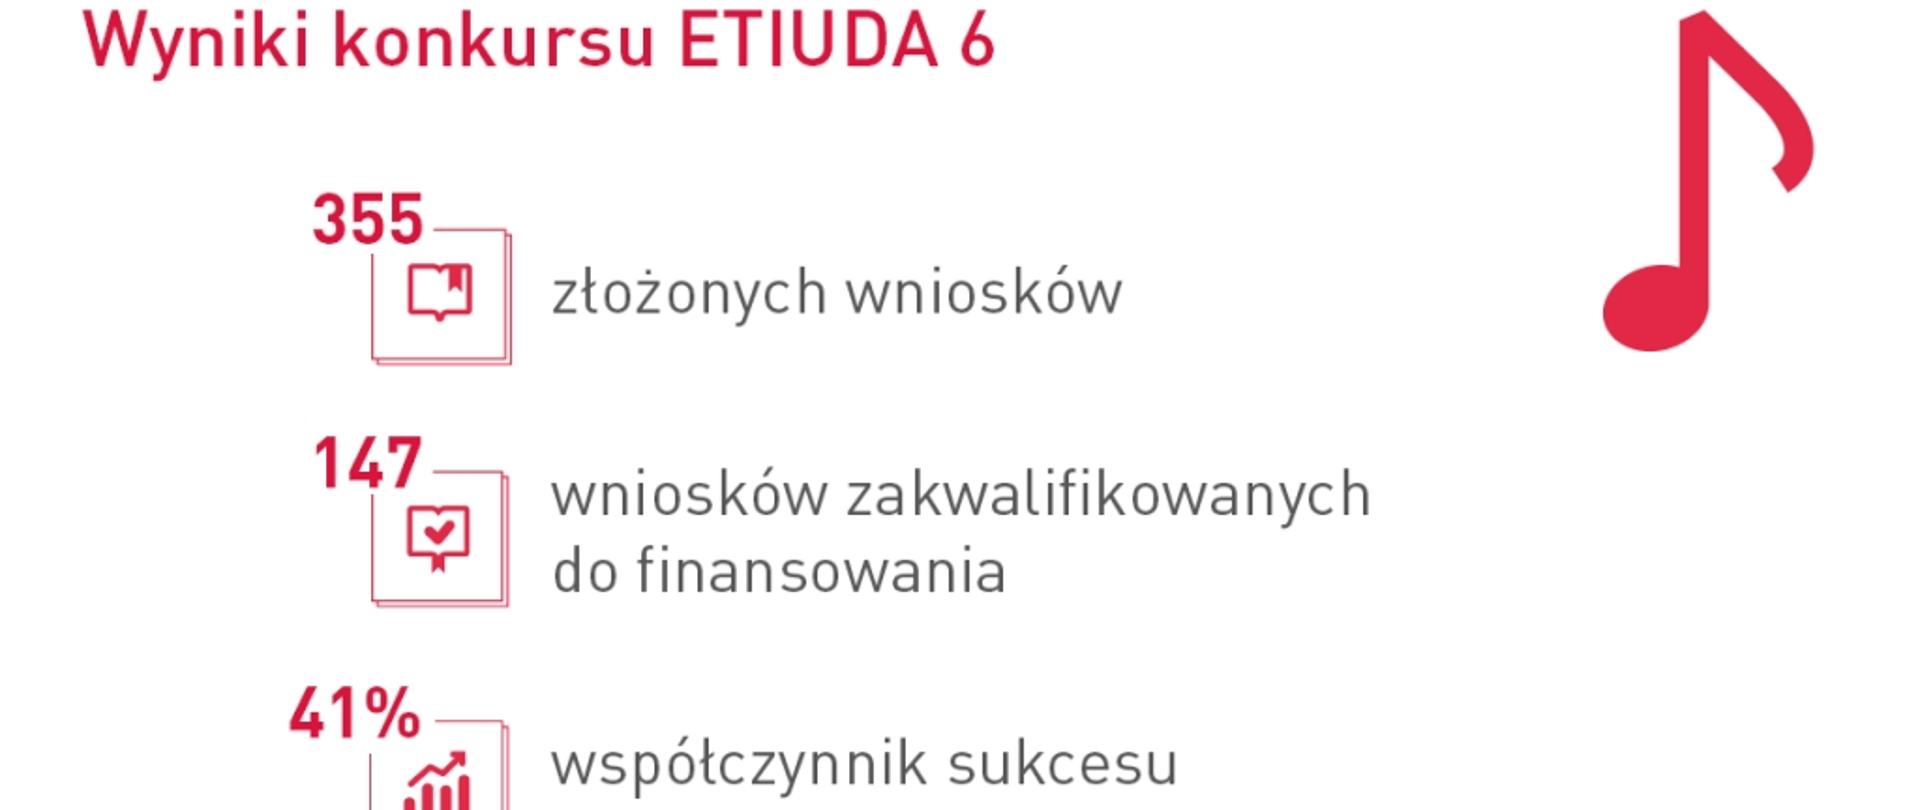 Grafika - na białym tle napisy: Wyniki konkursu ETIUDA 6: 355 złożonych wniosków, 147 zakwalifikowanych, 41% współczynnik sukcesu, 14,9 mln zł przyznanego finansowania